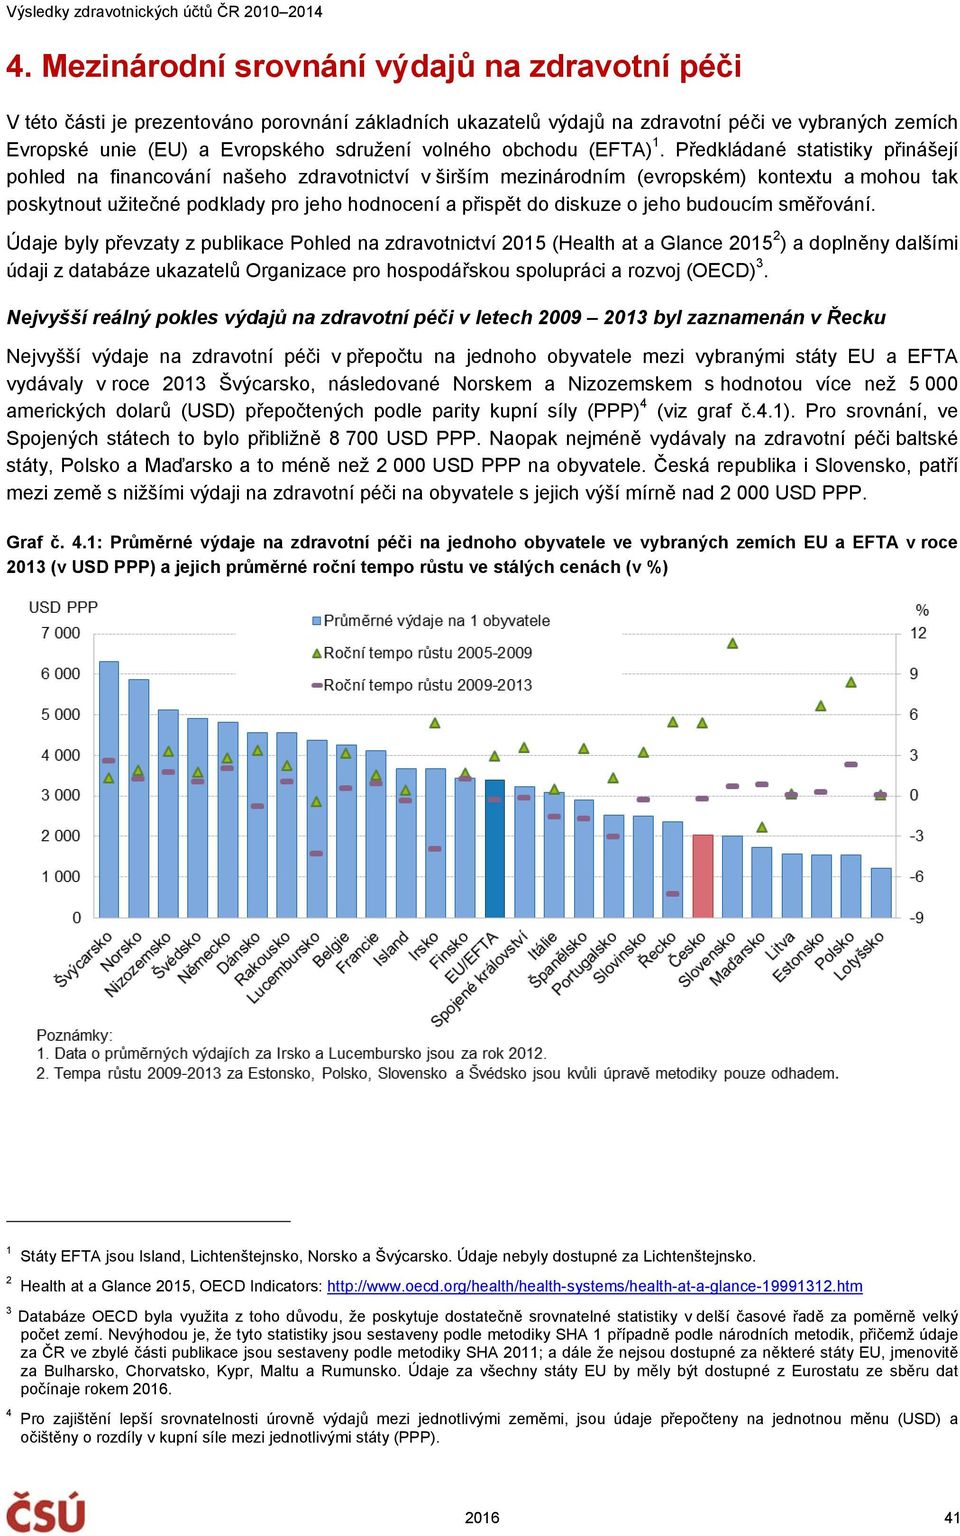 Předkládané statistiky přinášejí pohled na financování našeho zdravotnictví v širším mezinárodním (evropském) kontextu a mohou tak poskytnout užitečné podklady pro jeho hodnocení a přispět do diskuze